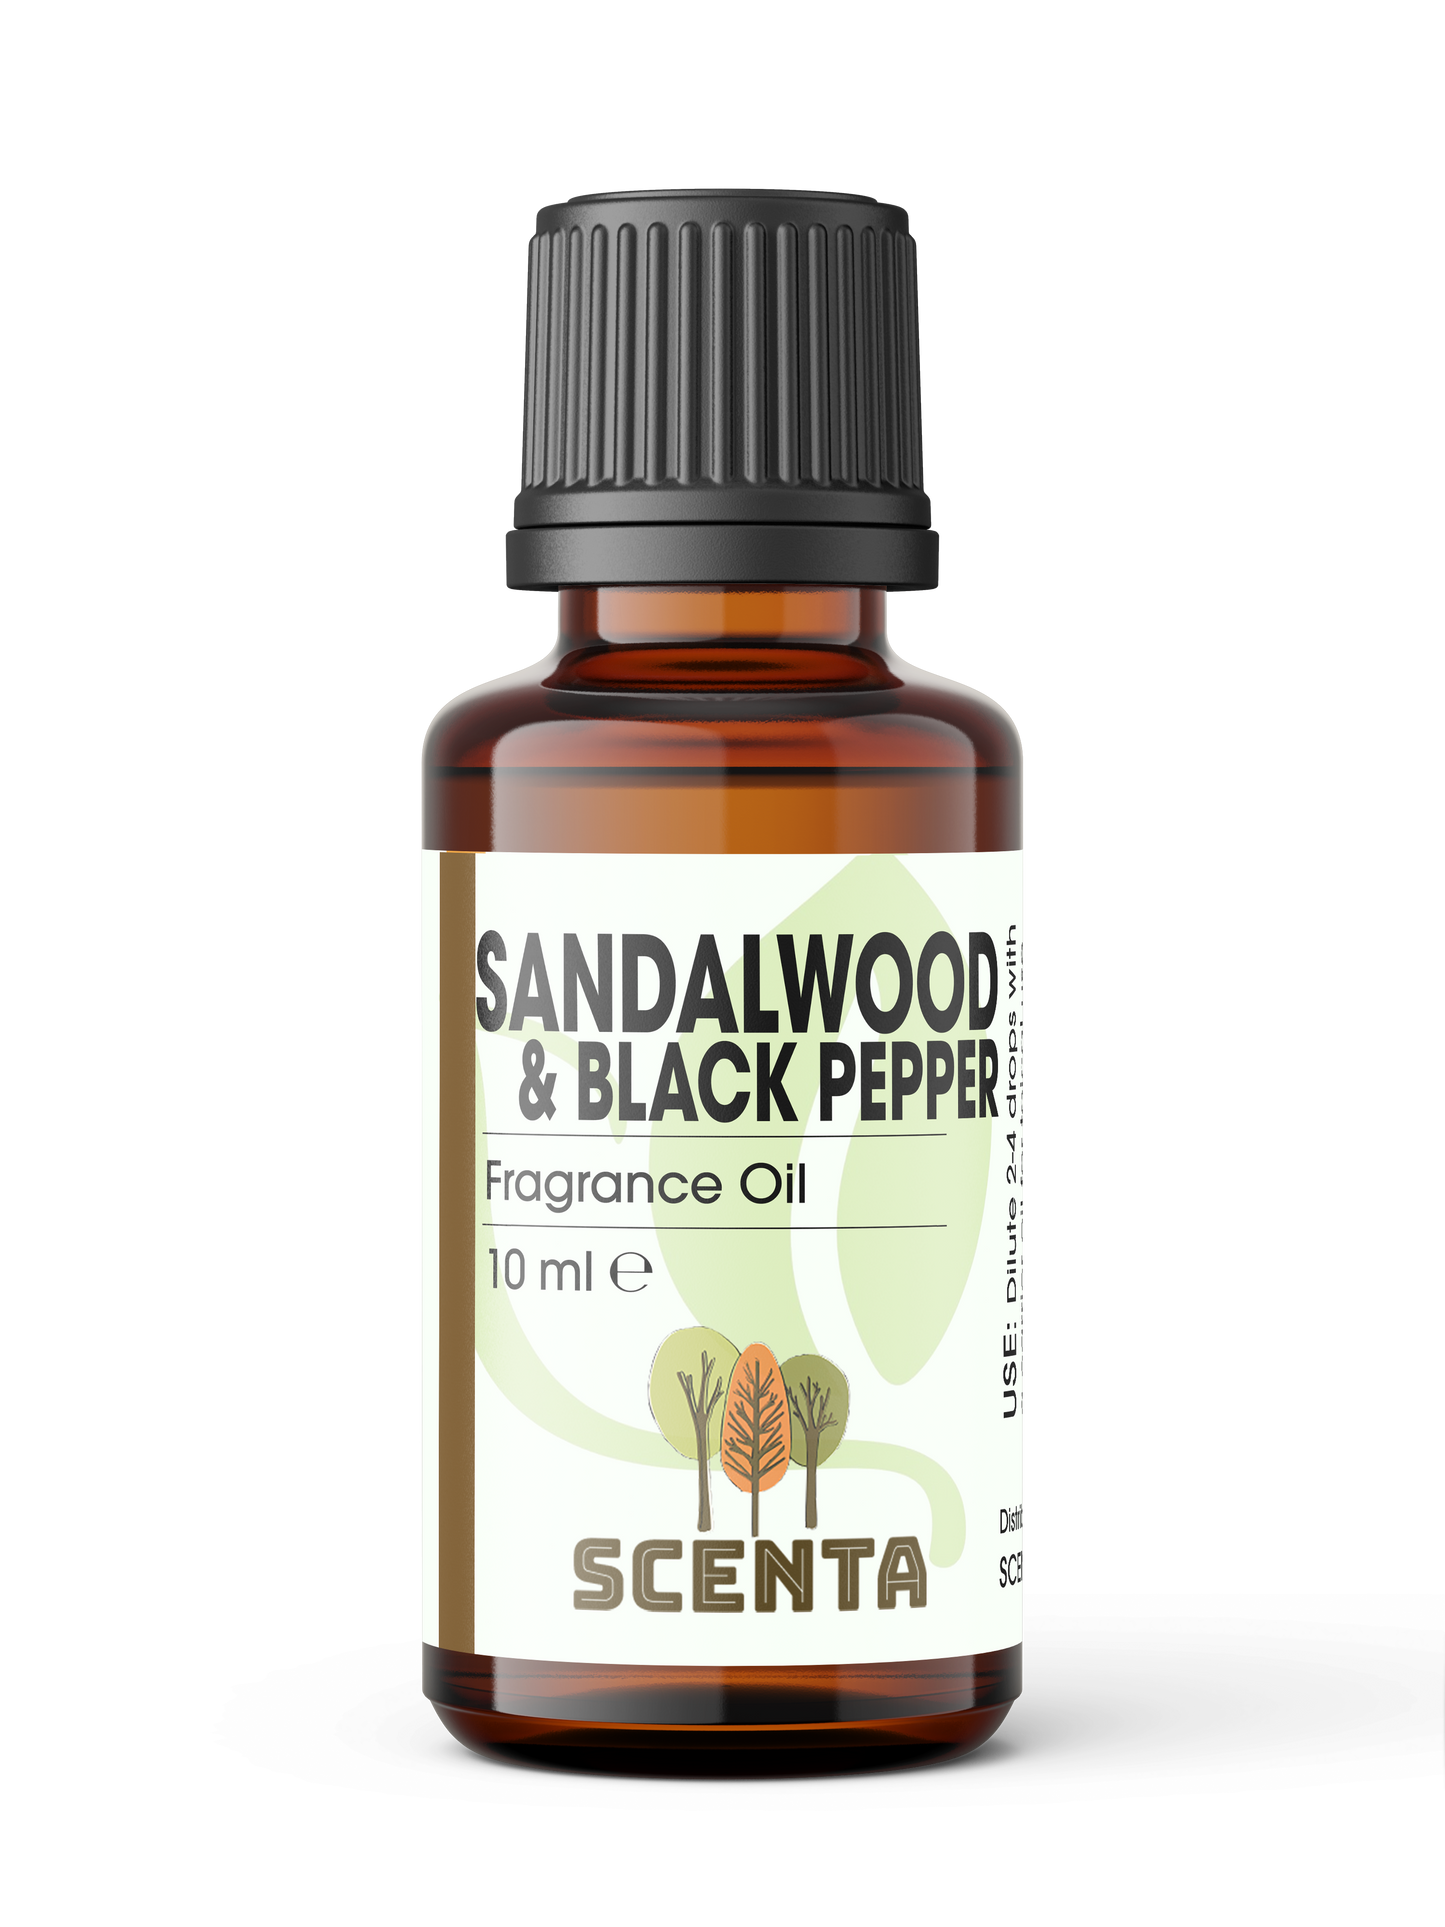 Sandalwood & Black Pepper Fragrance Oil 10ml